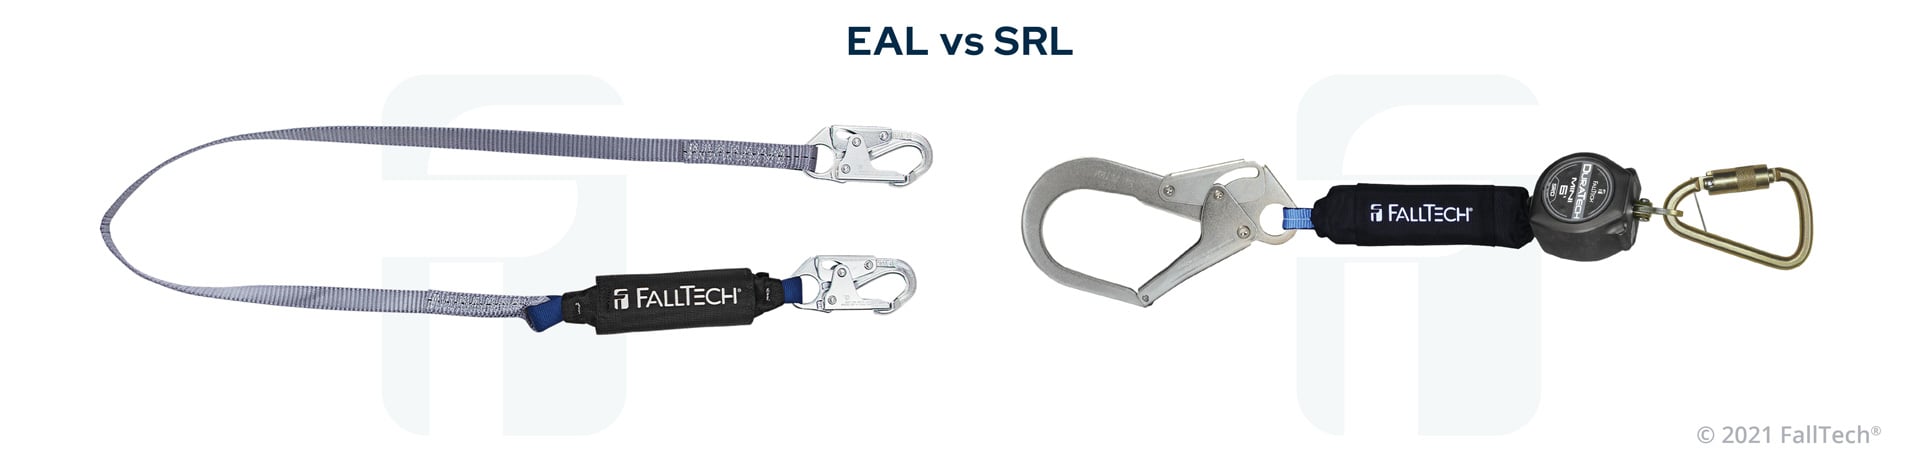 EAL-VS-SRL